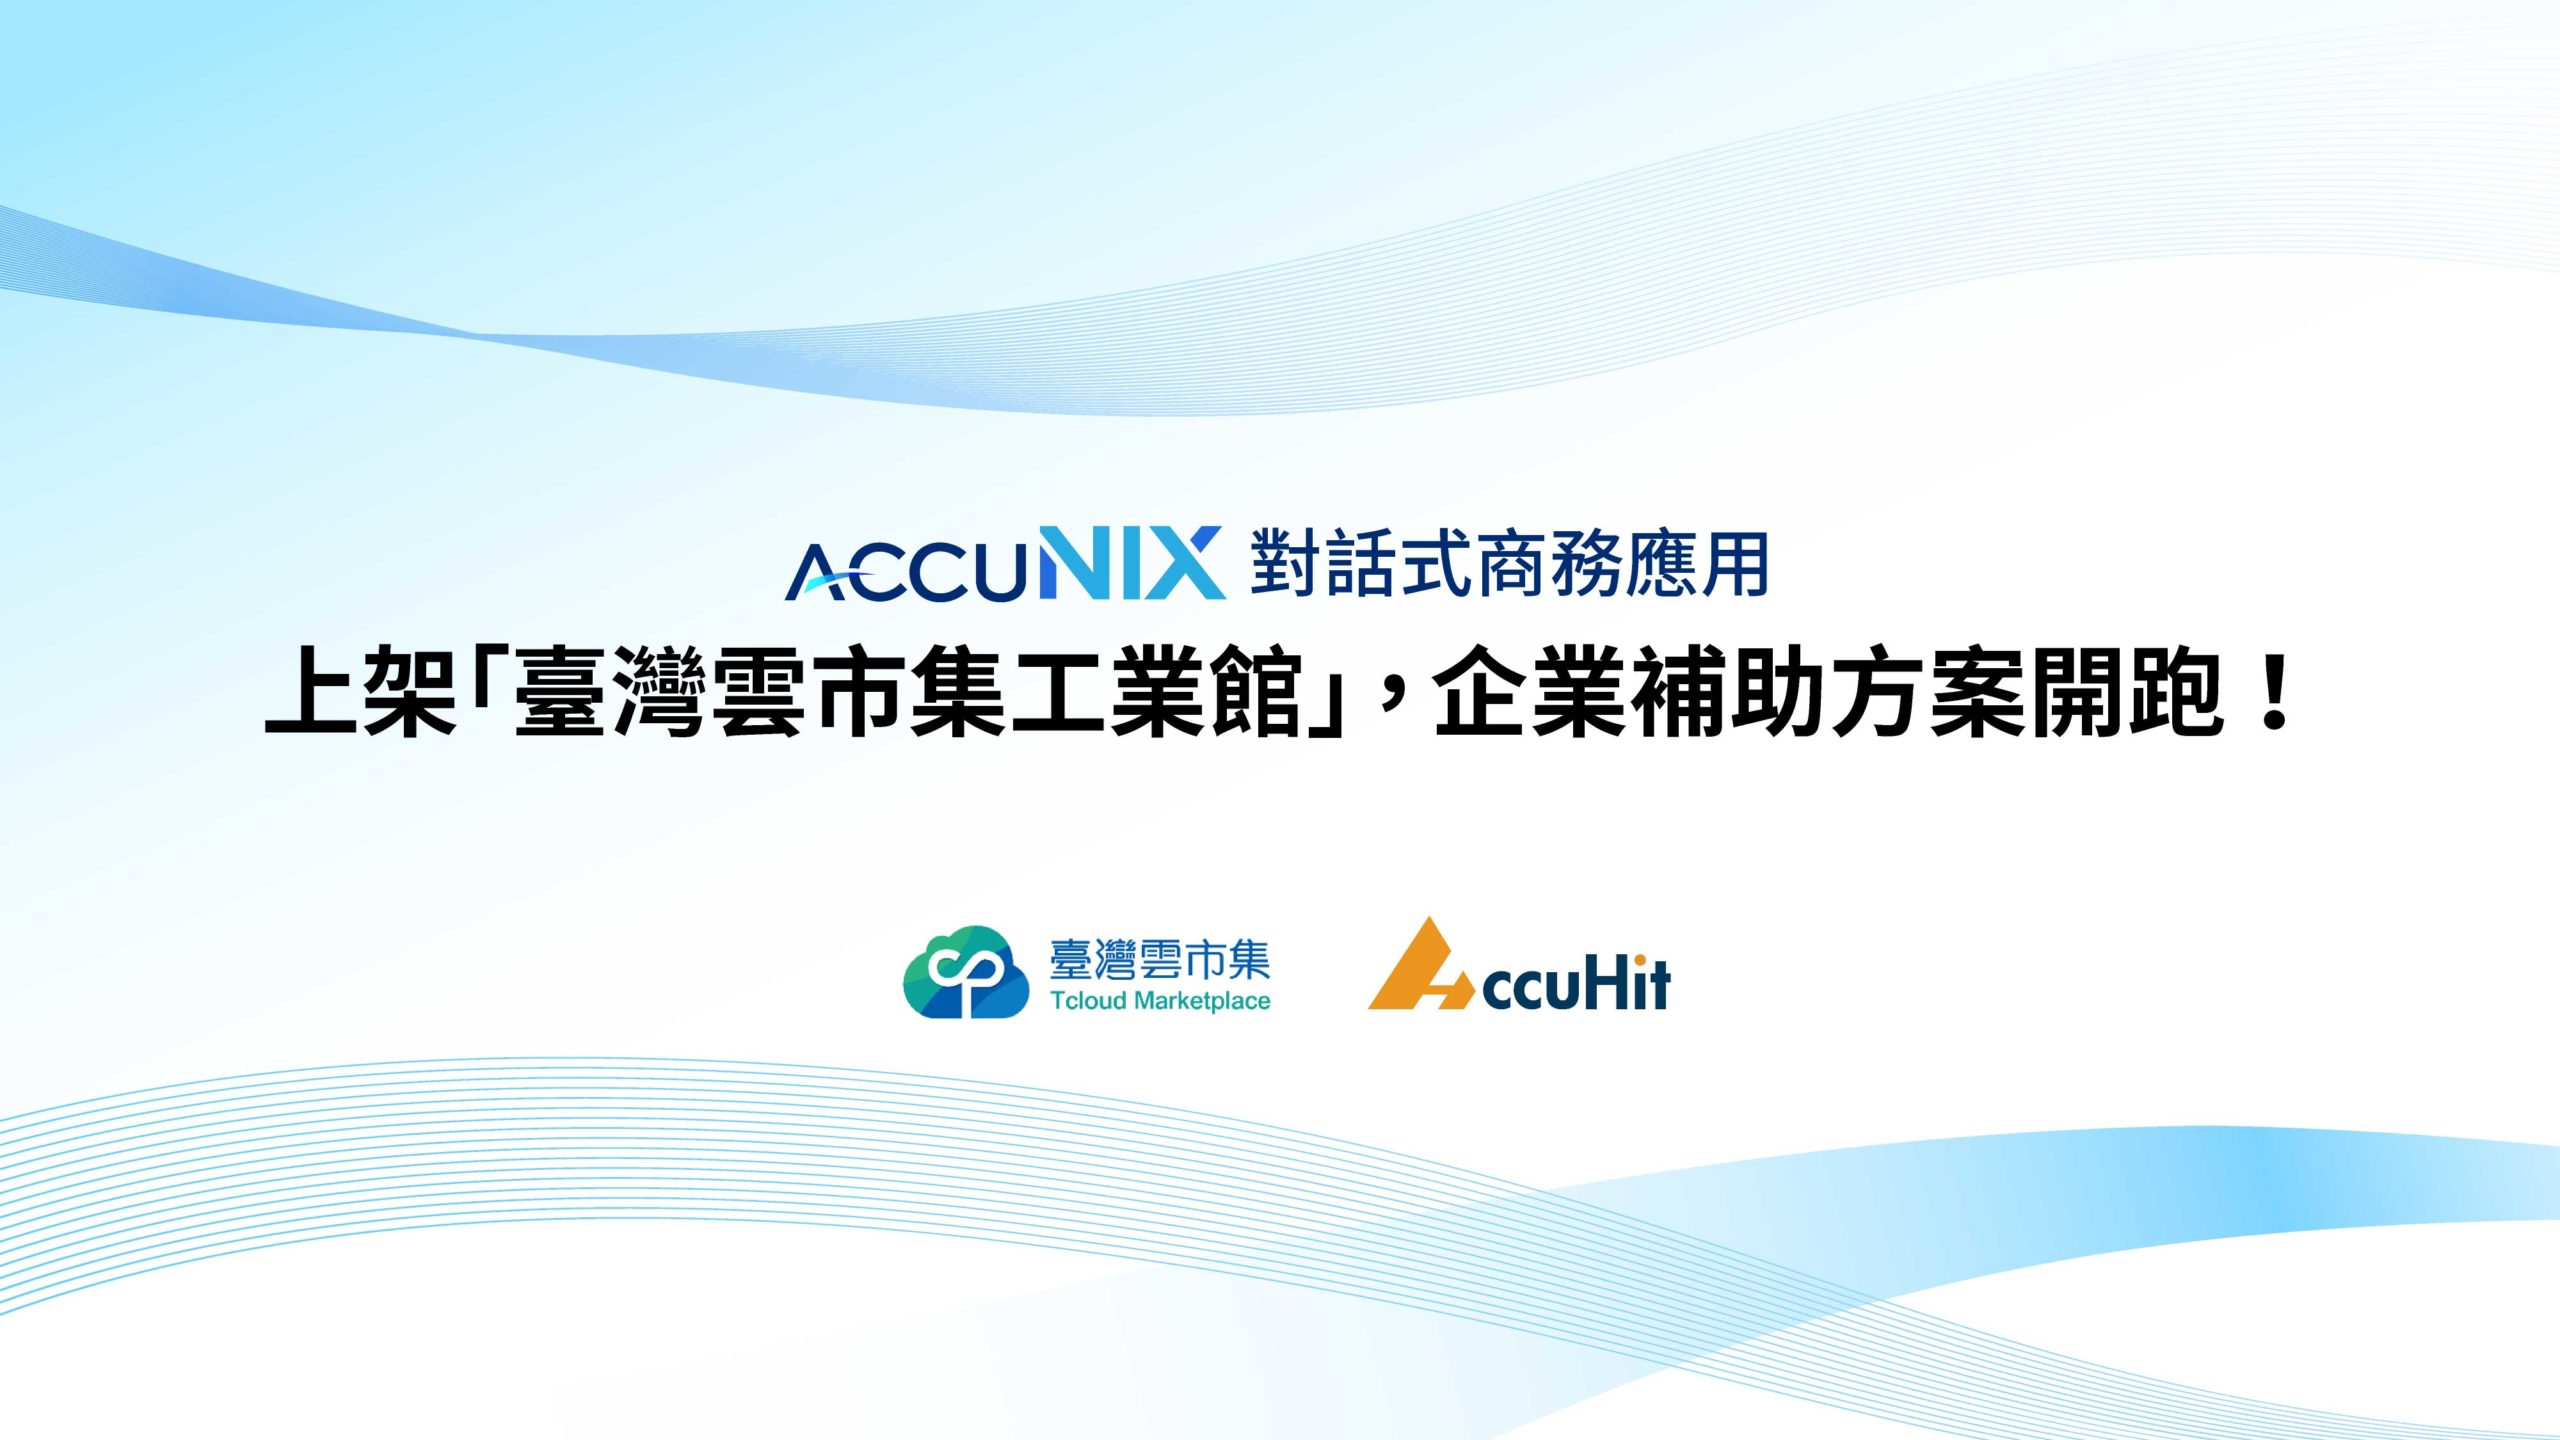 推動製造業數位轉型，AccuNix 上架經濟部「台灣雲市集 TCloud」工業館，企業採購可獲最高 20 萬政府補助款